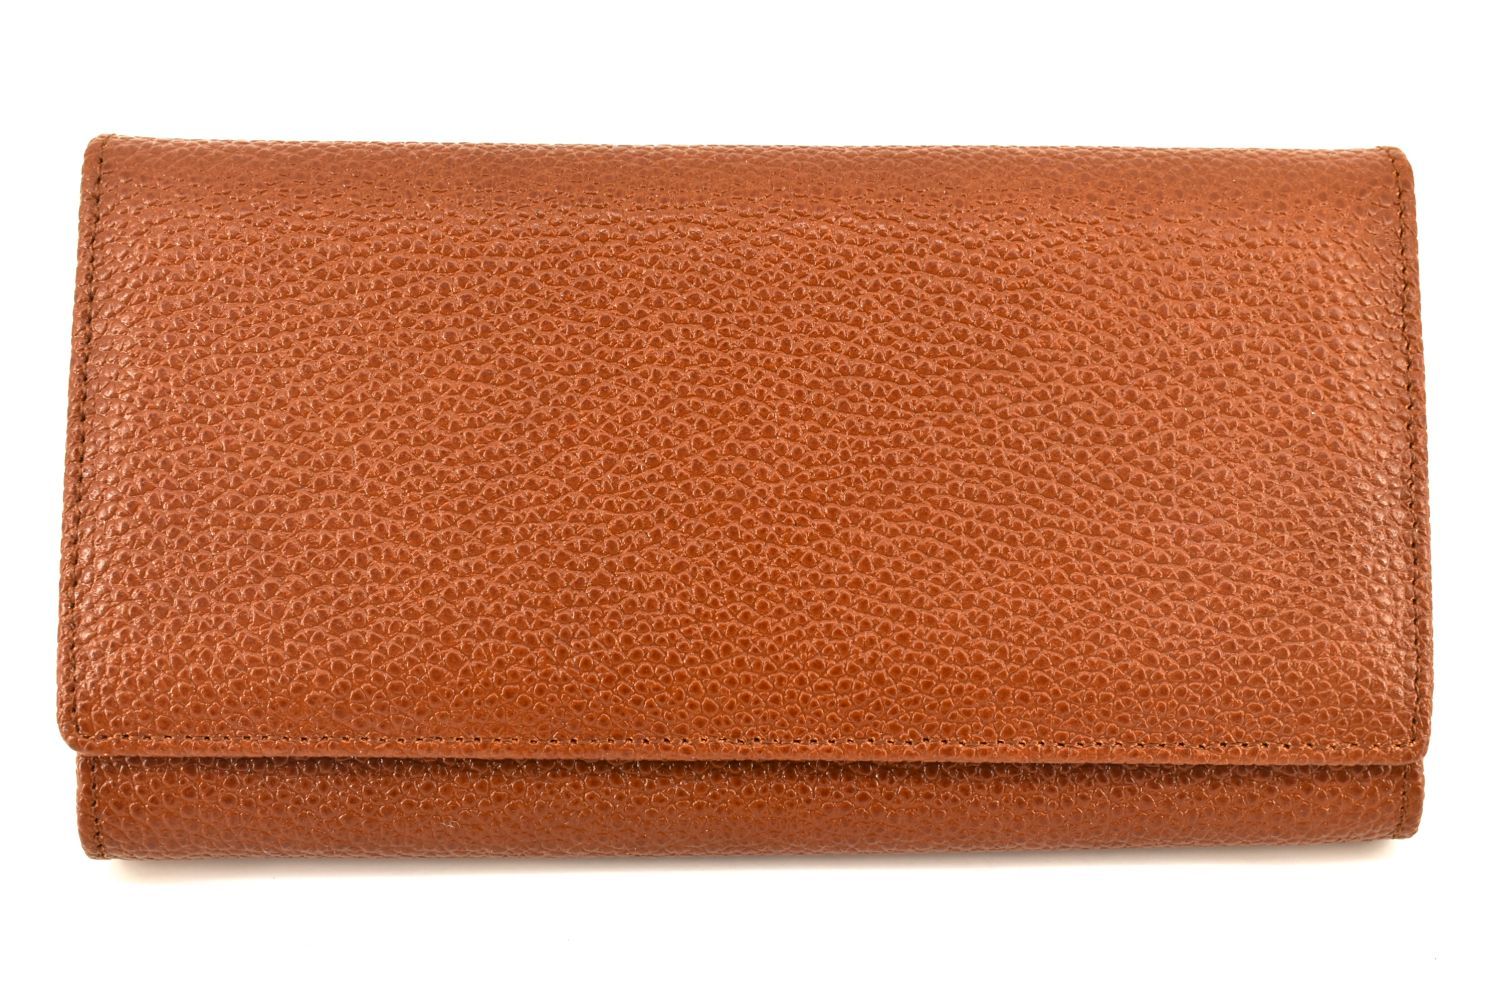 Dámská kožená peněženka Arteddy -hnědá 41567